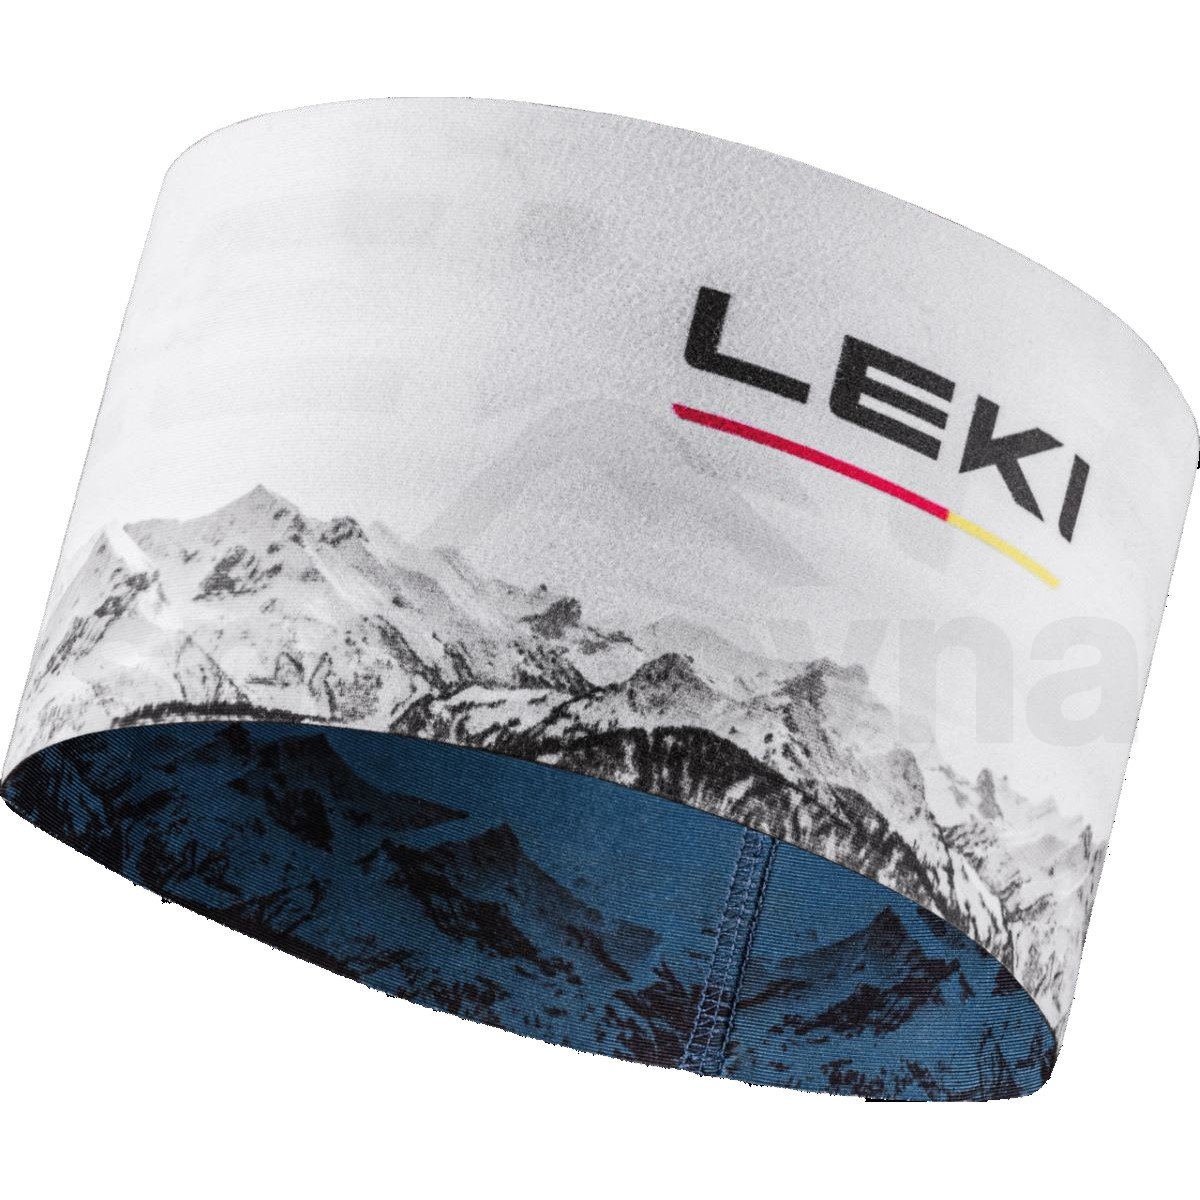 Čelenka Leki XC Headband - modrá/bílá